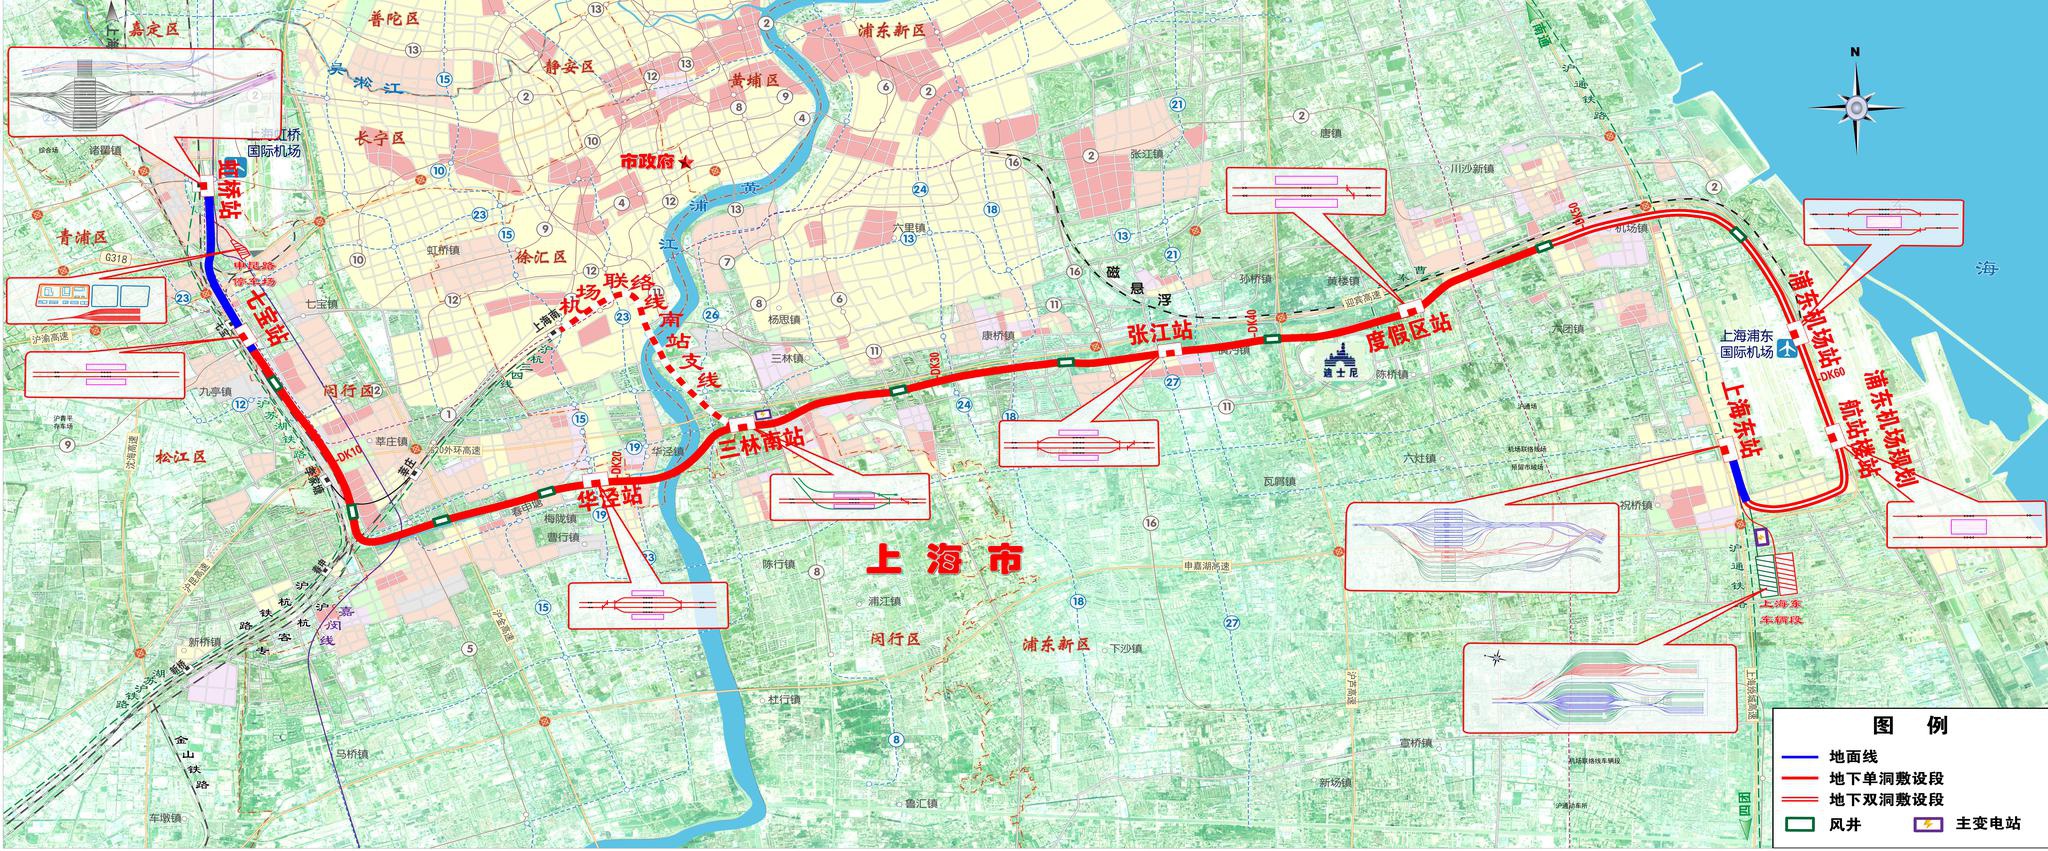 上海机场联络线最新消息 交线走向图及局部规划图曝光 - 本地资讯 - 装一网